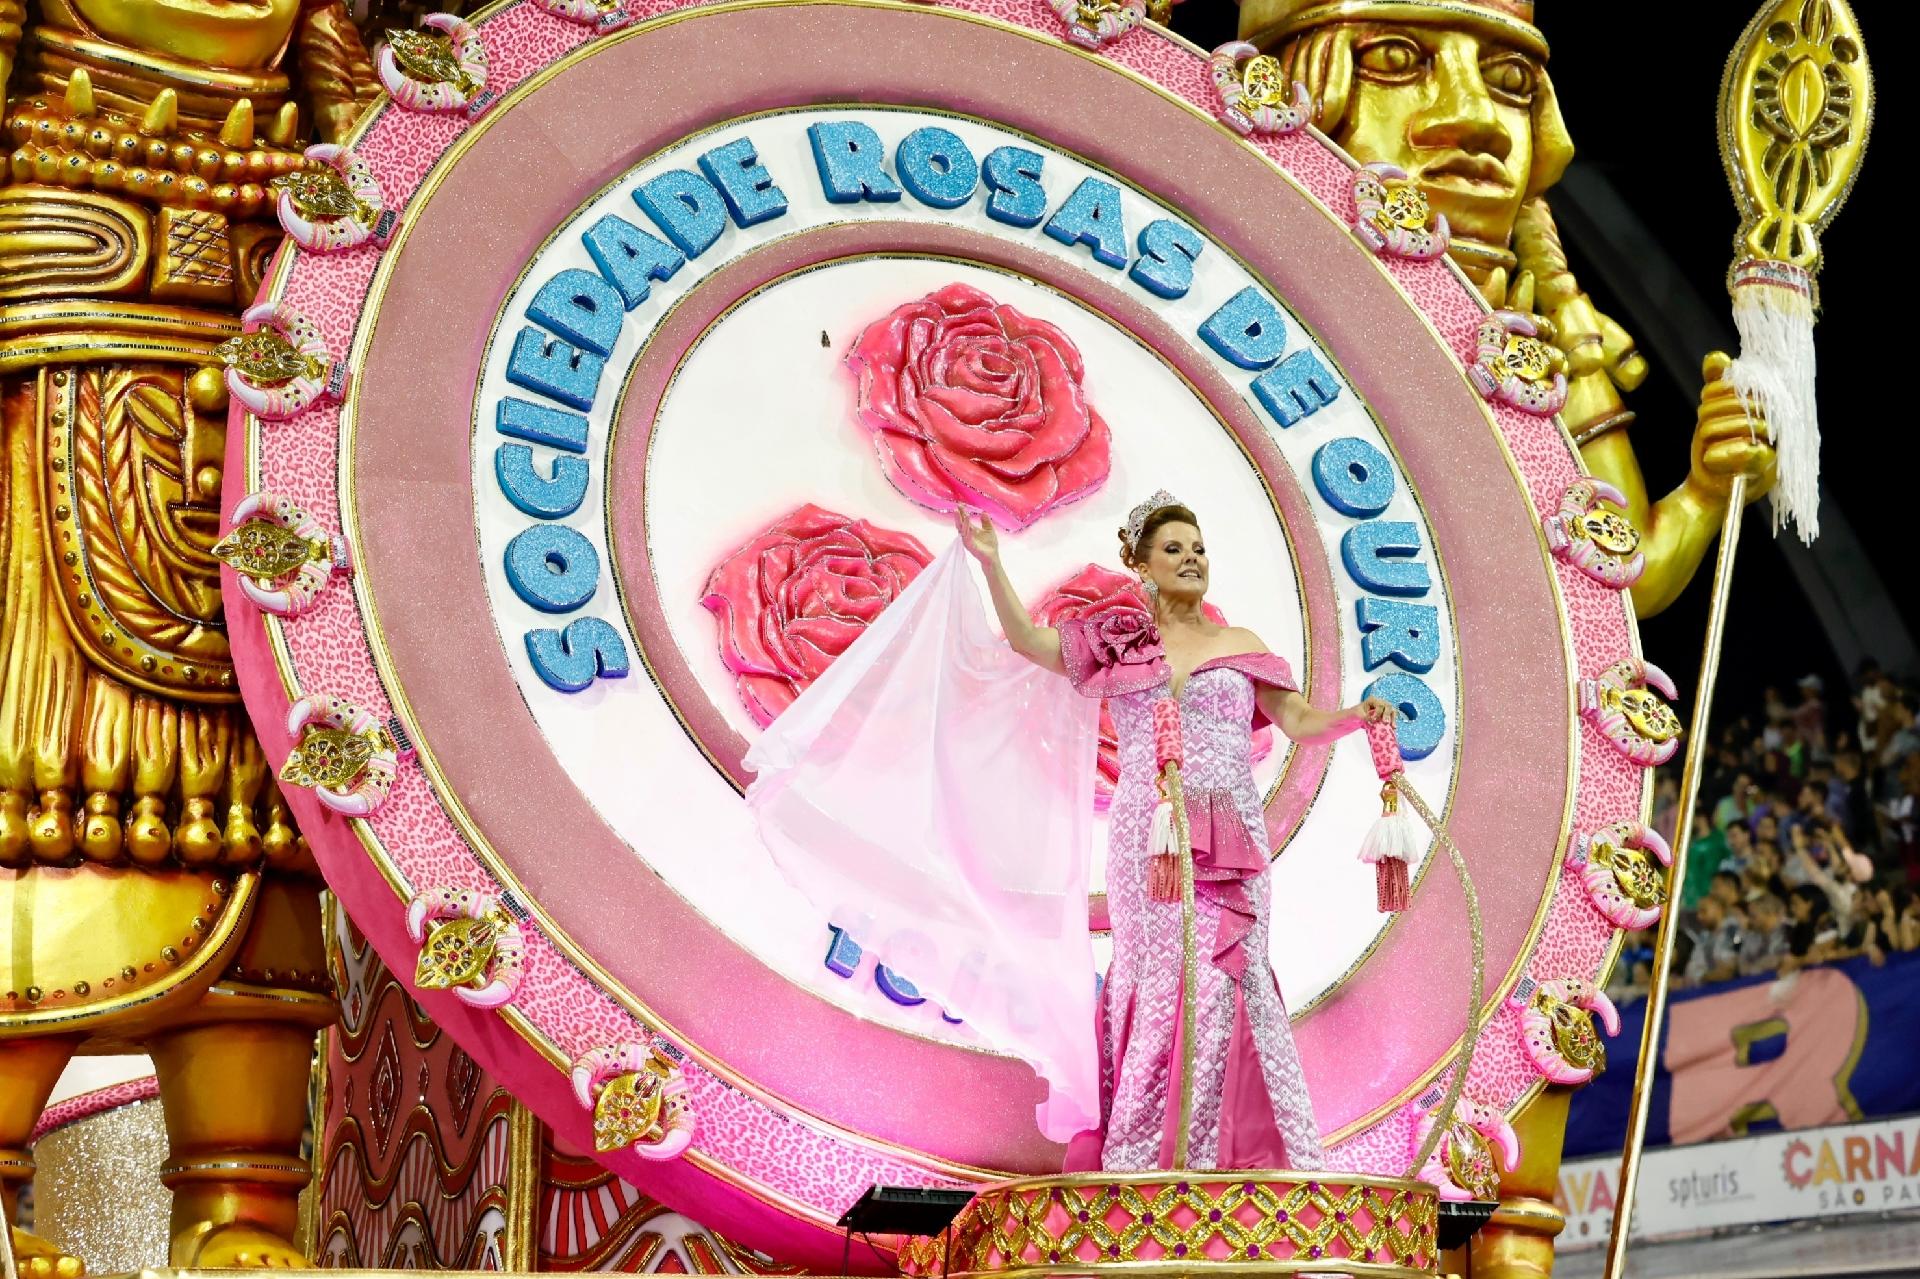 Sociedade Rosas de Ouro - Alô, Nação Azul e Rosa! Canta, canta, caaaaanta  Roseira. Confira em primeira mão a letra oficial do nosso samba de 2018:  SOCIEDADE ROSAS DE OURO - CARNAVAL